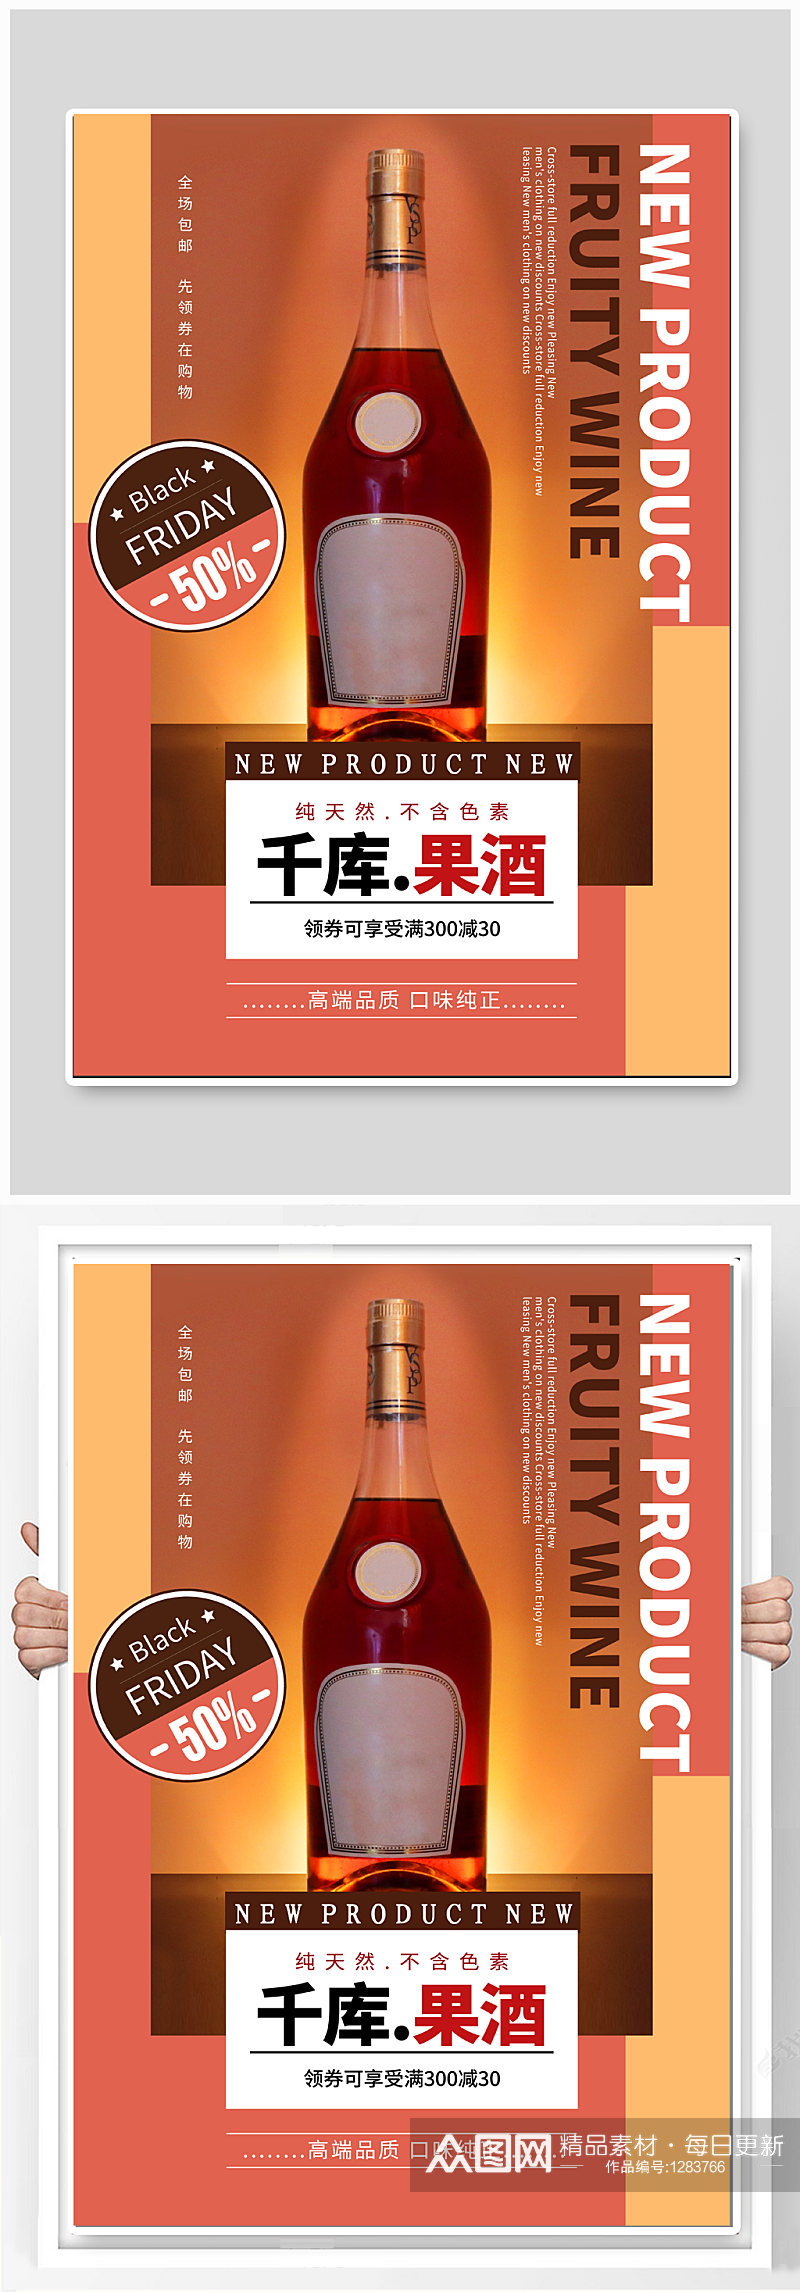 果酒酒文化宣传海报素材